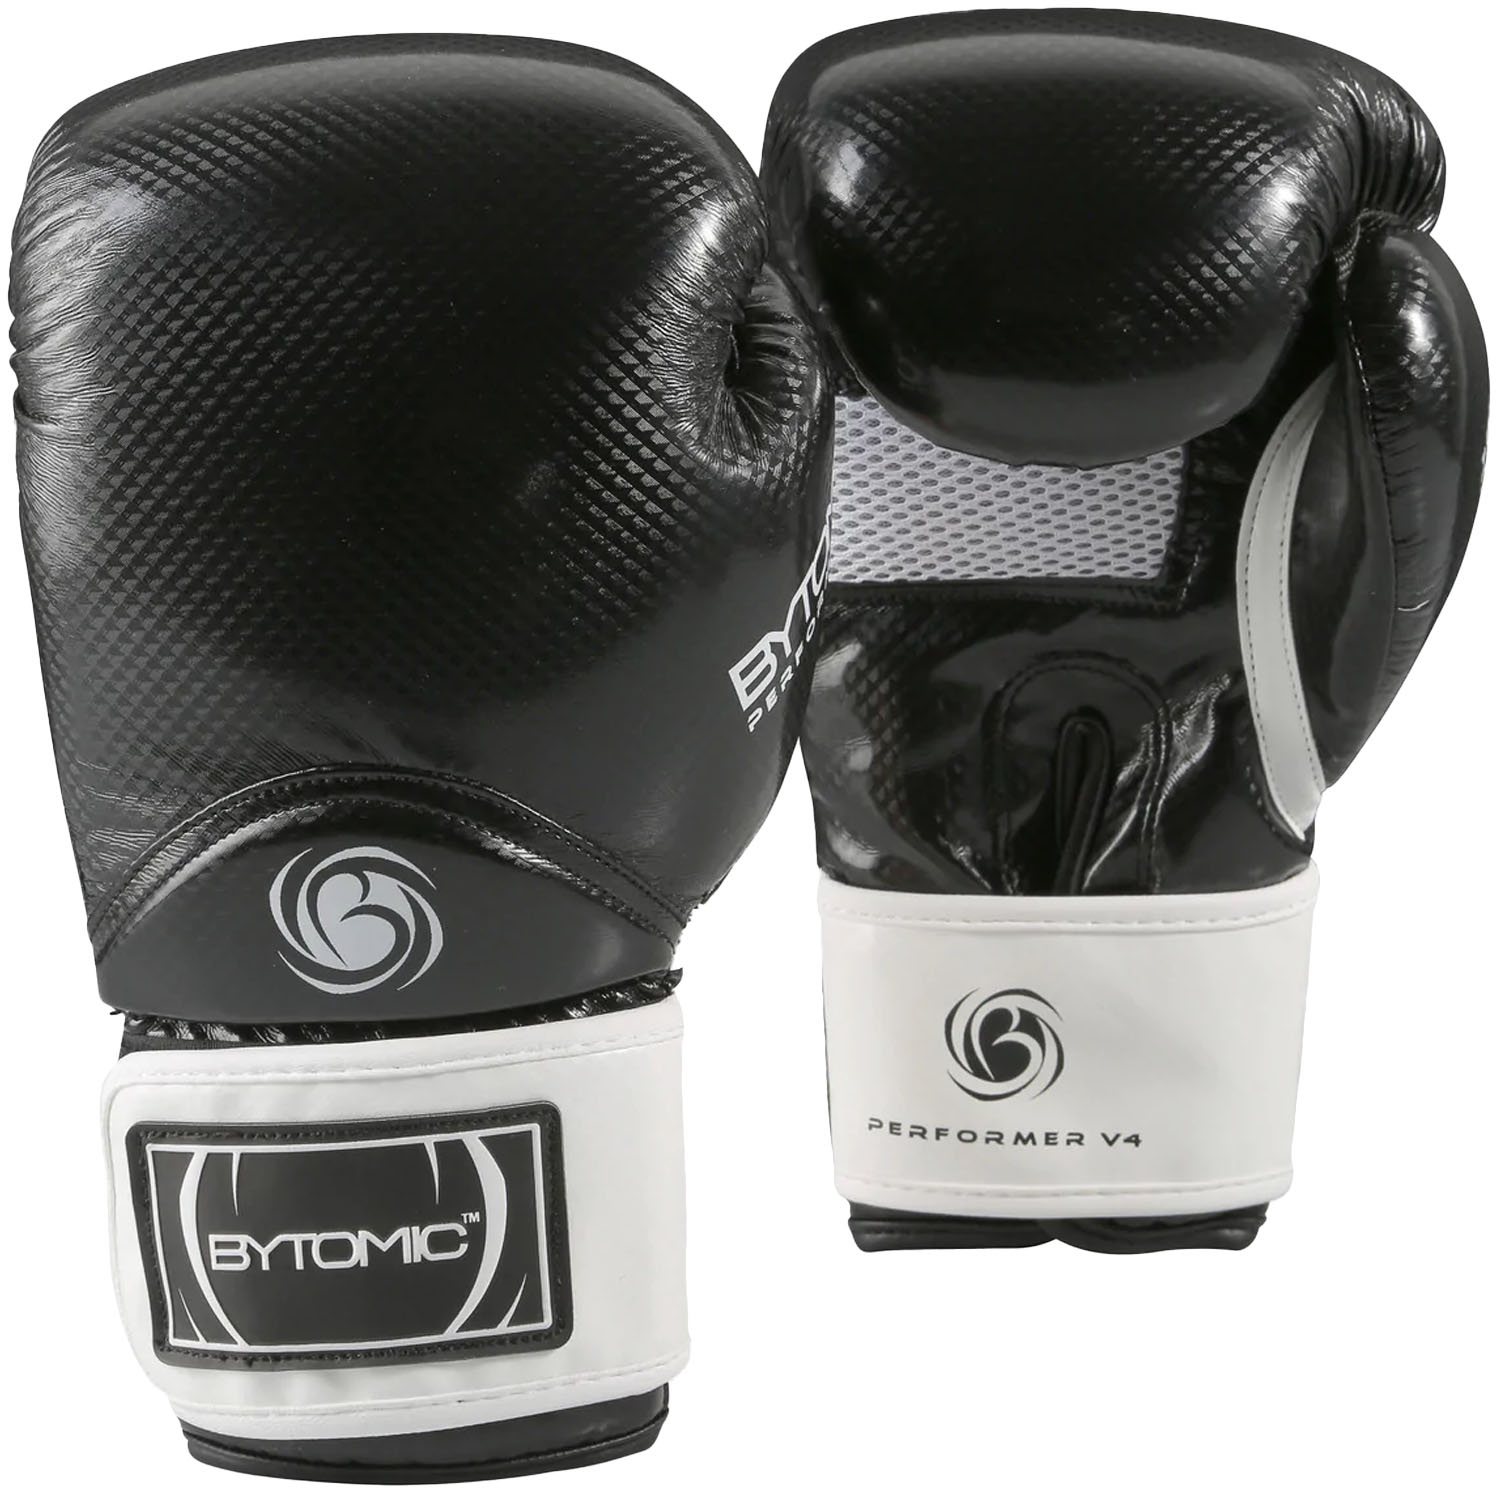 Bytomic Boxing Gloves, Performer, V4, black-white